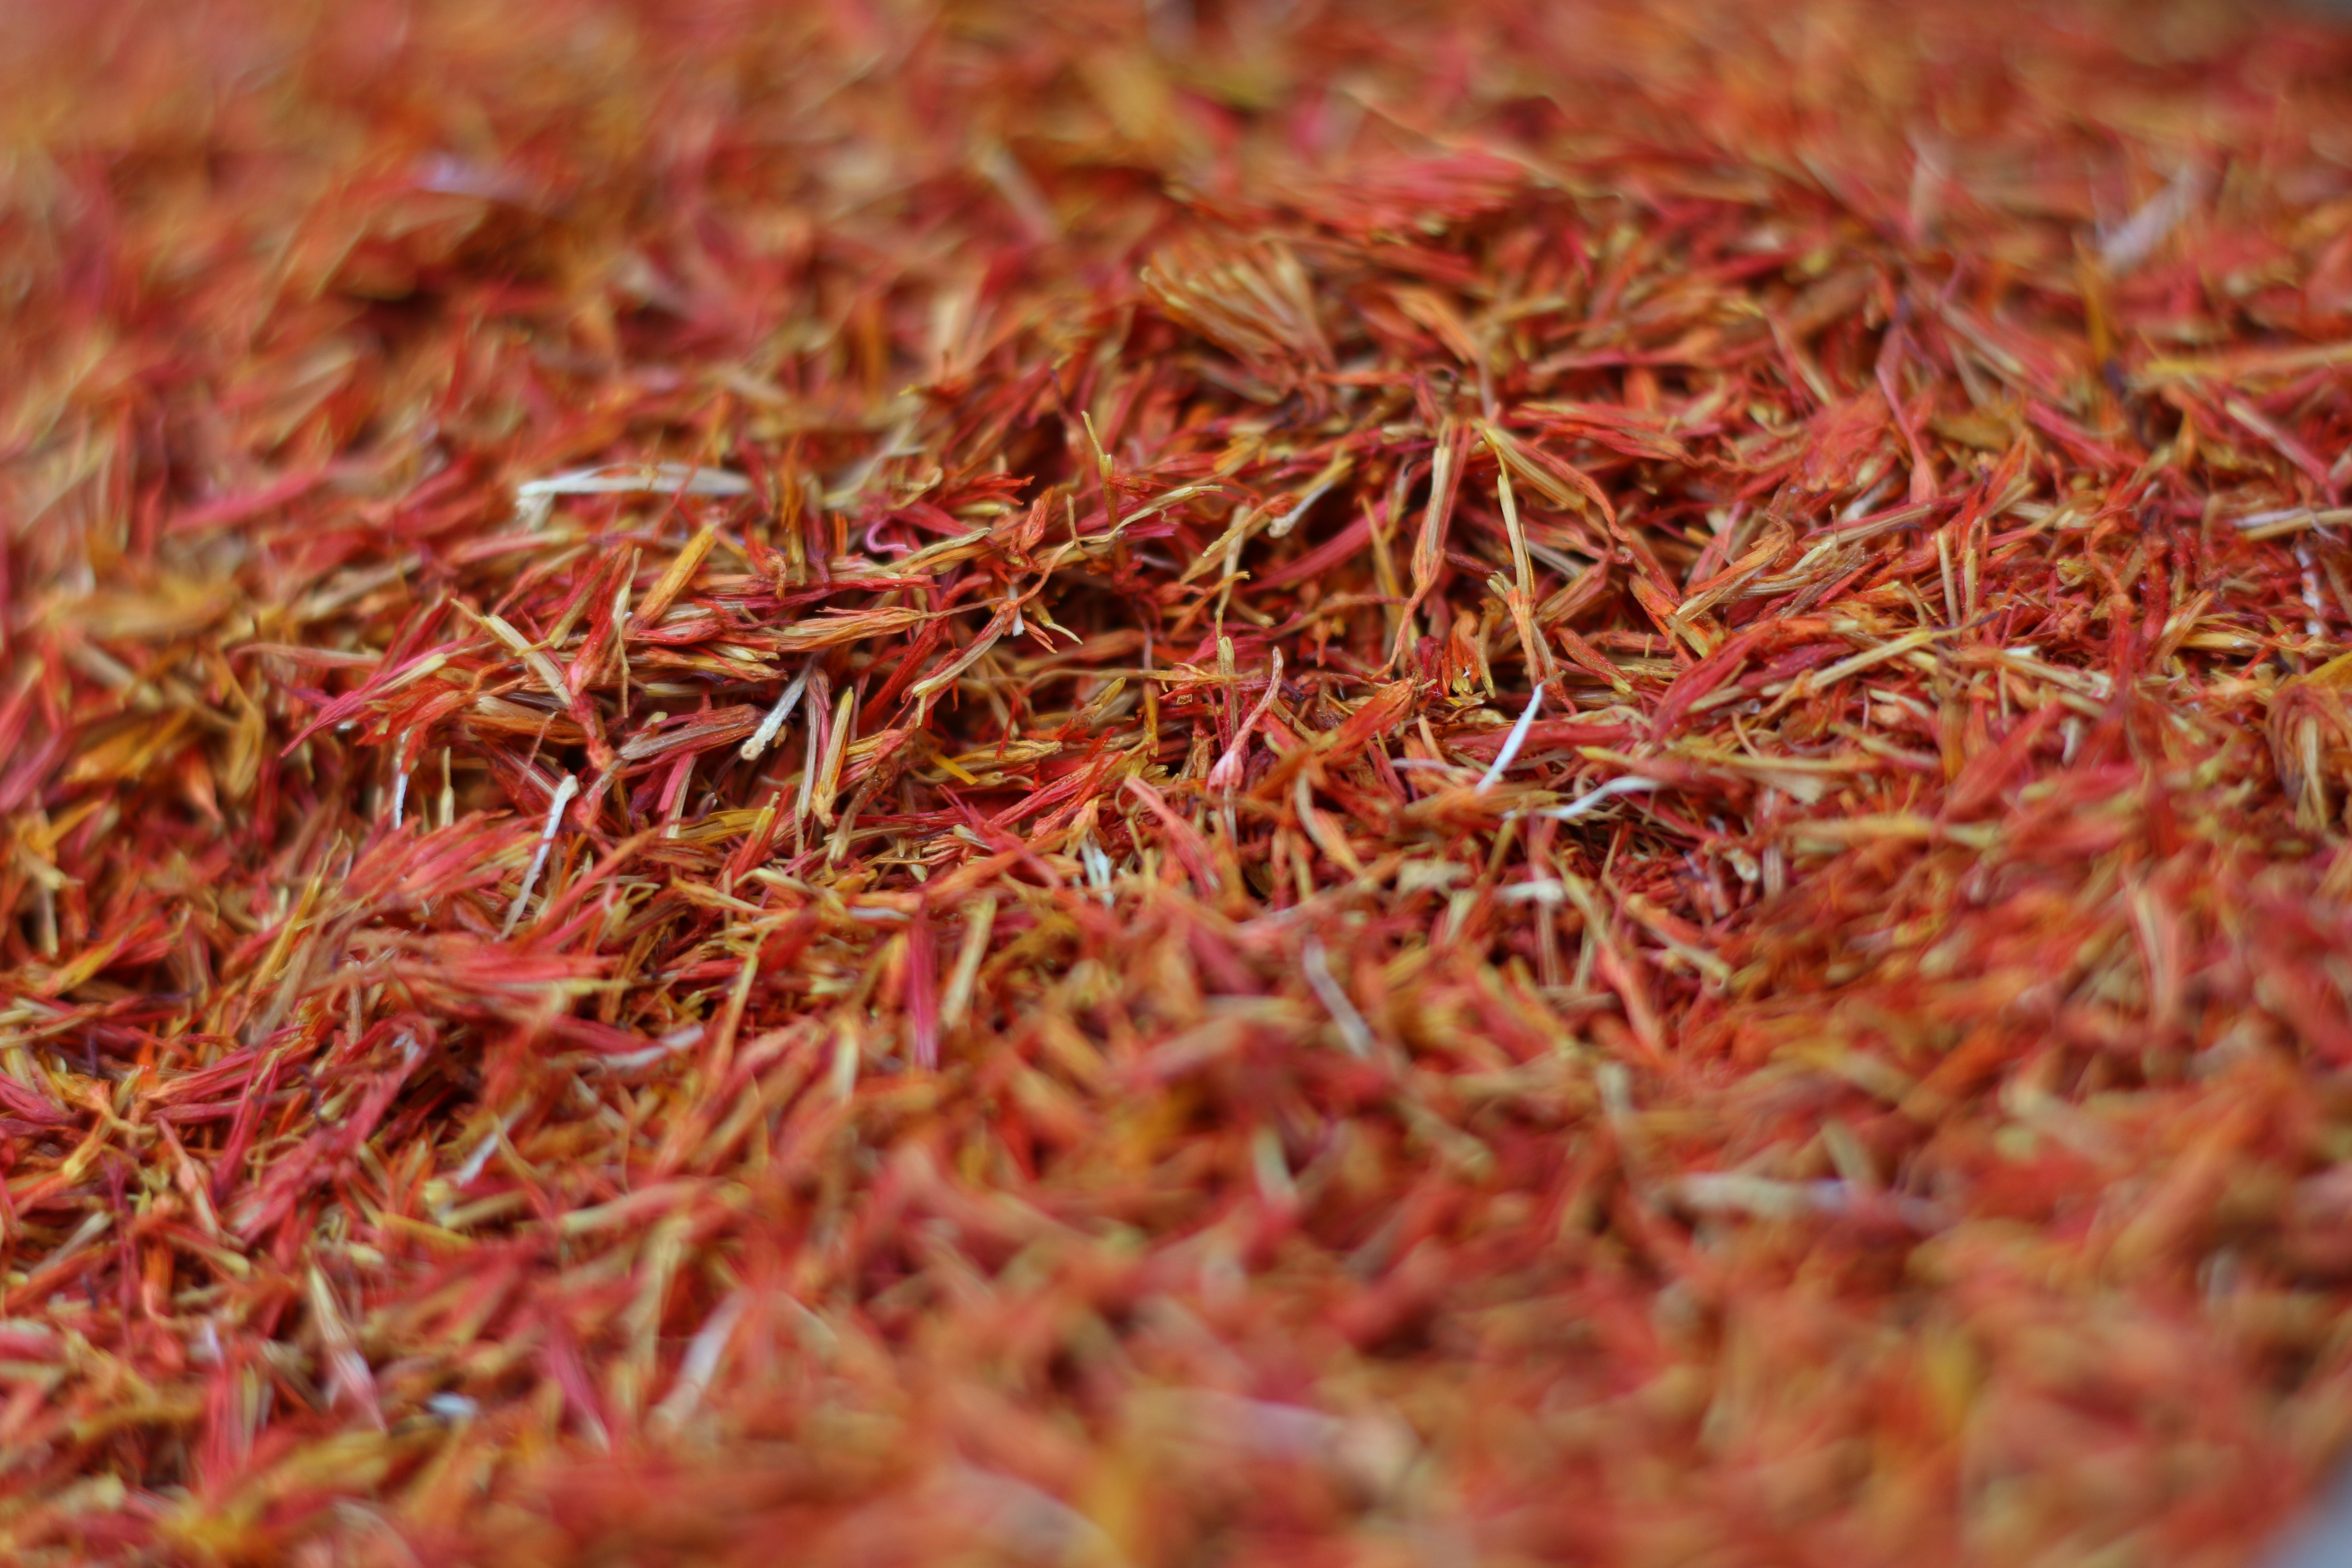 야생의 홍화꽃에서 채취를 한 붉은 빛깔의 홍화를 바닥에 수북하게 깔고 확대하여 찍은 사진